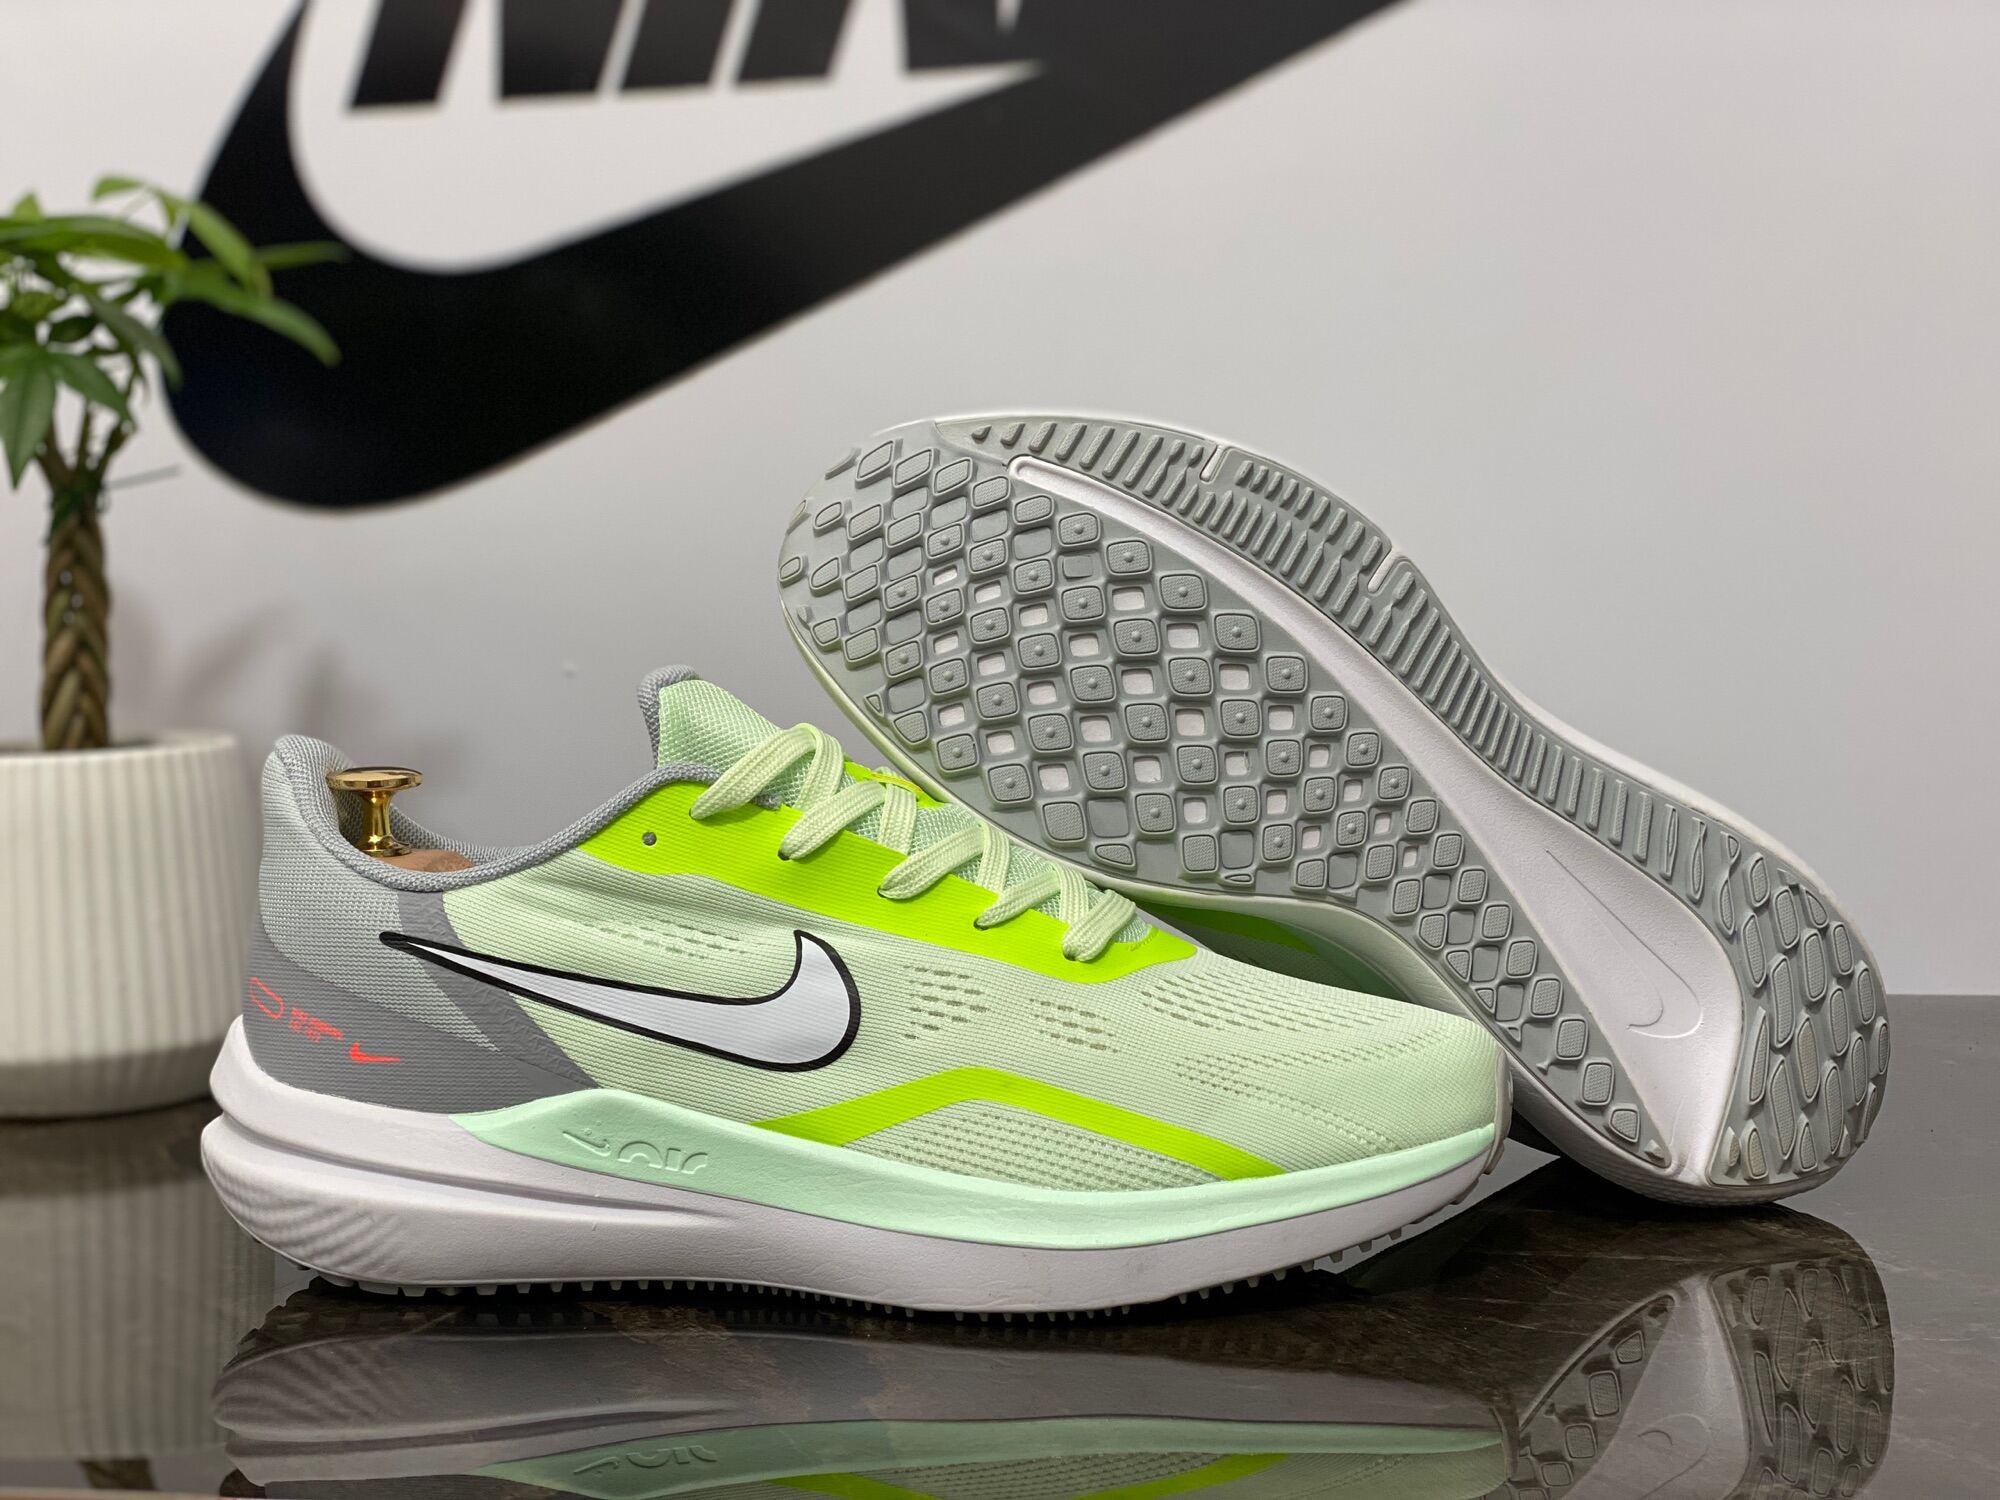 GIÀY NAM Nike Winflo 9 MẪU MỚI VỀ ĐẶT BIỆT SHOP ĐANG ƯU ĐÃI GIÁ VÀ HỖ TRỢ